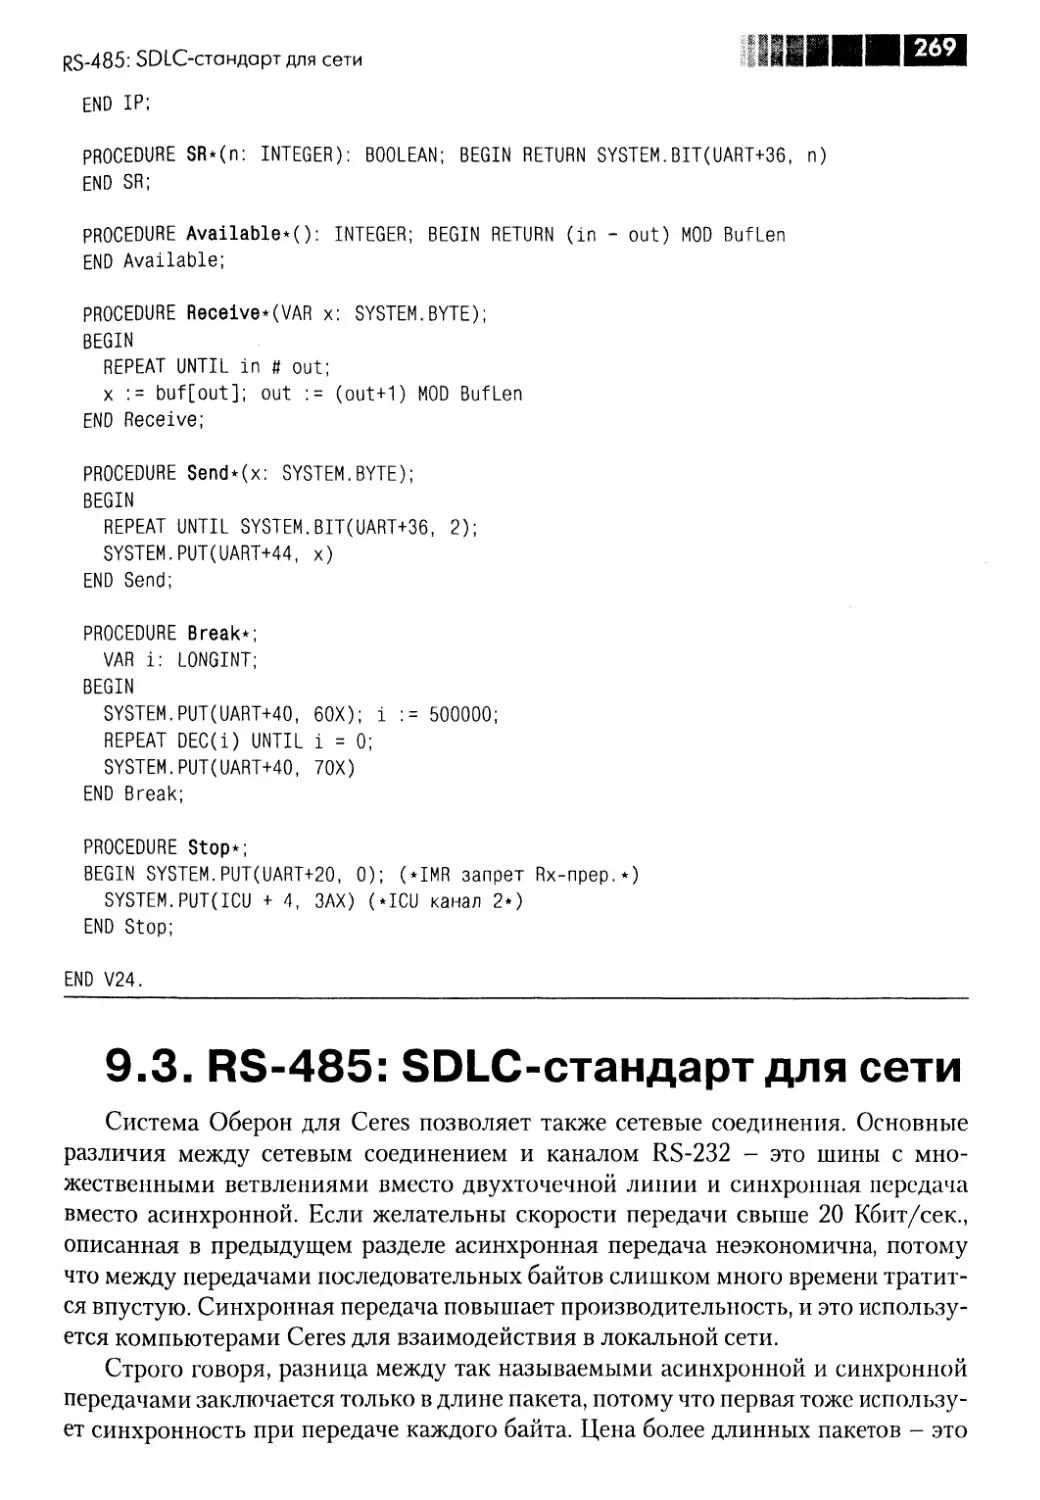 9.3. RS-485: SDLC-стандарт для сети